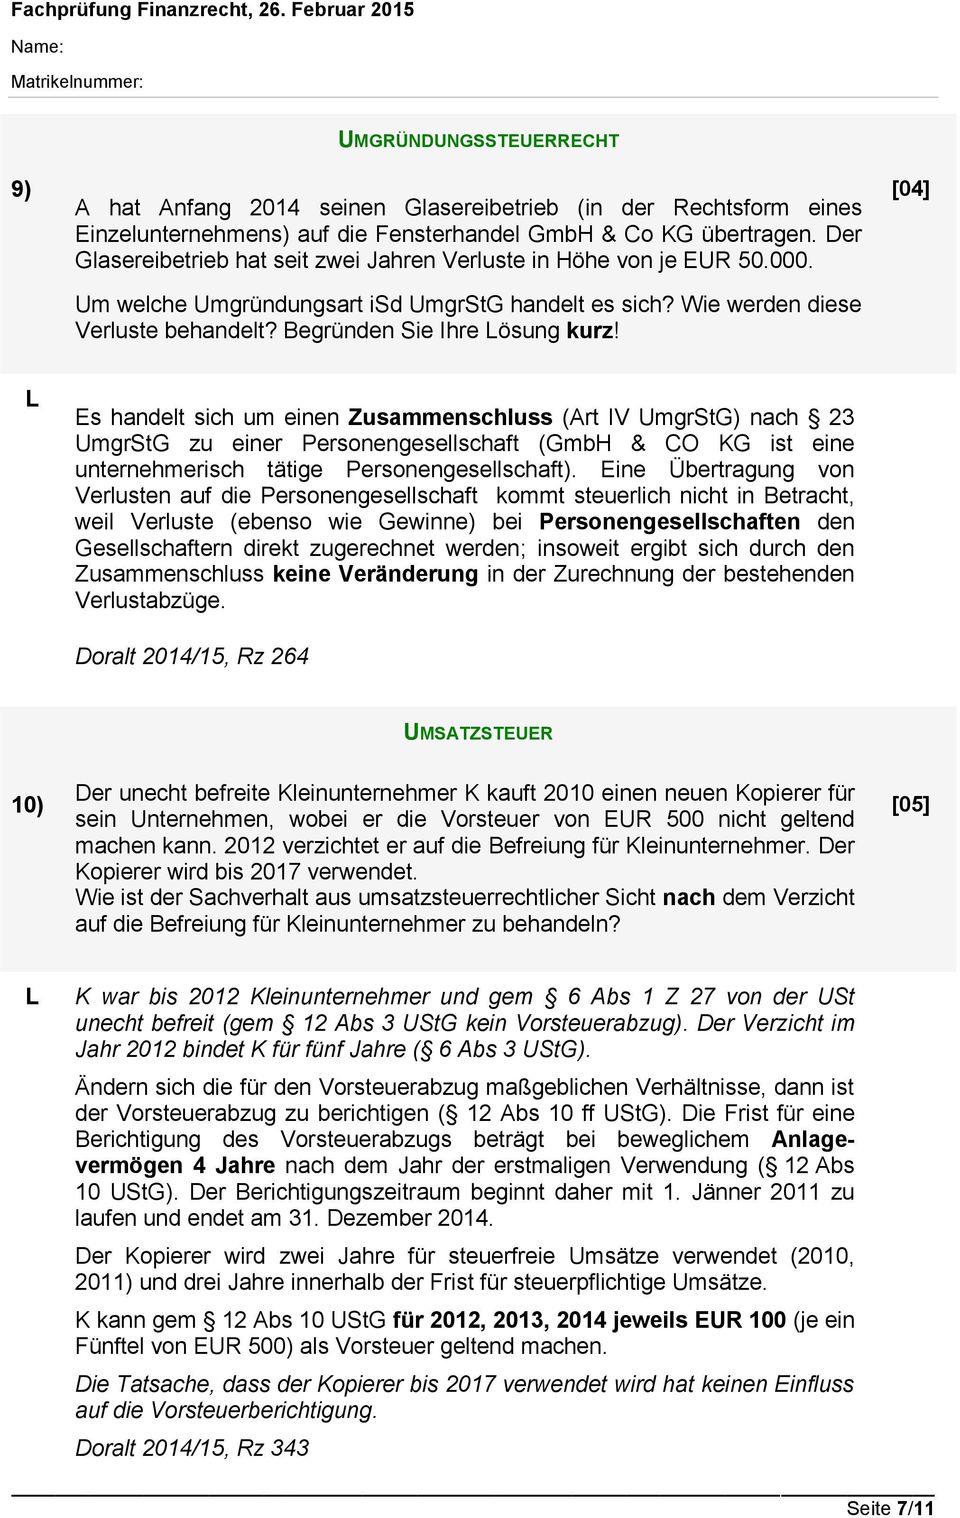 [04] Es handelt sich um einen Zusammenschluss (Art IV UmgrStG) nach 23 UmgrStG zu einer Personengesellschaft (GmbH & CO KG ist eine unternehmerisch tätige Personengesellschaft).